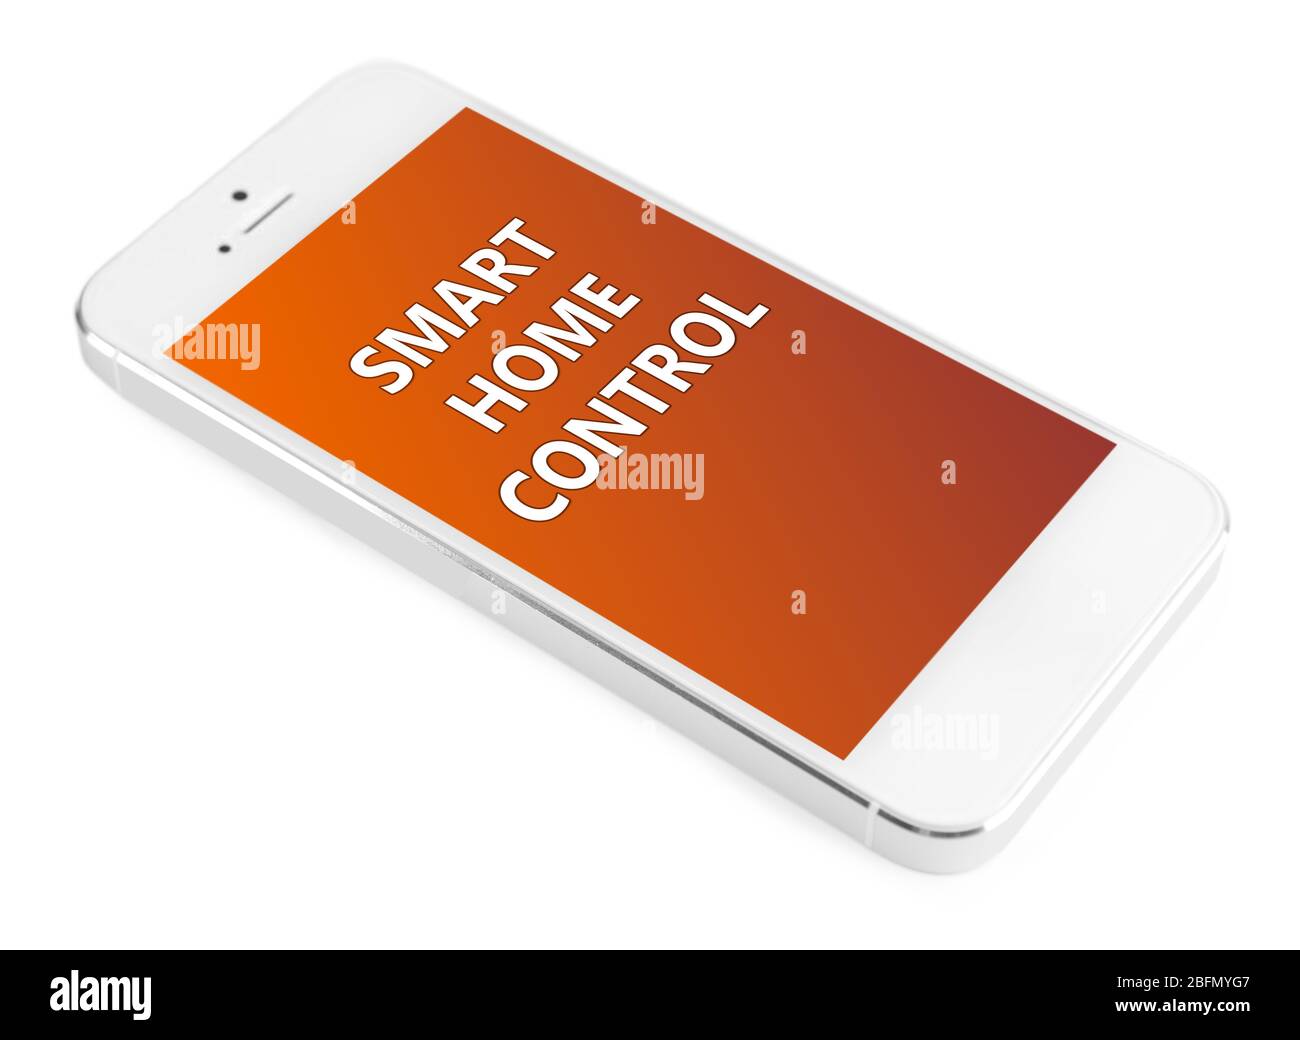 Application Smart Home installée sur le téléphone. Concept de contrôle intelligent à domicile. Banque D'Images